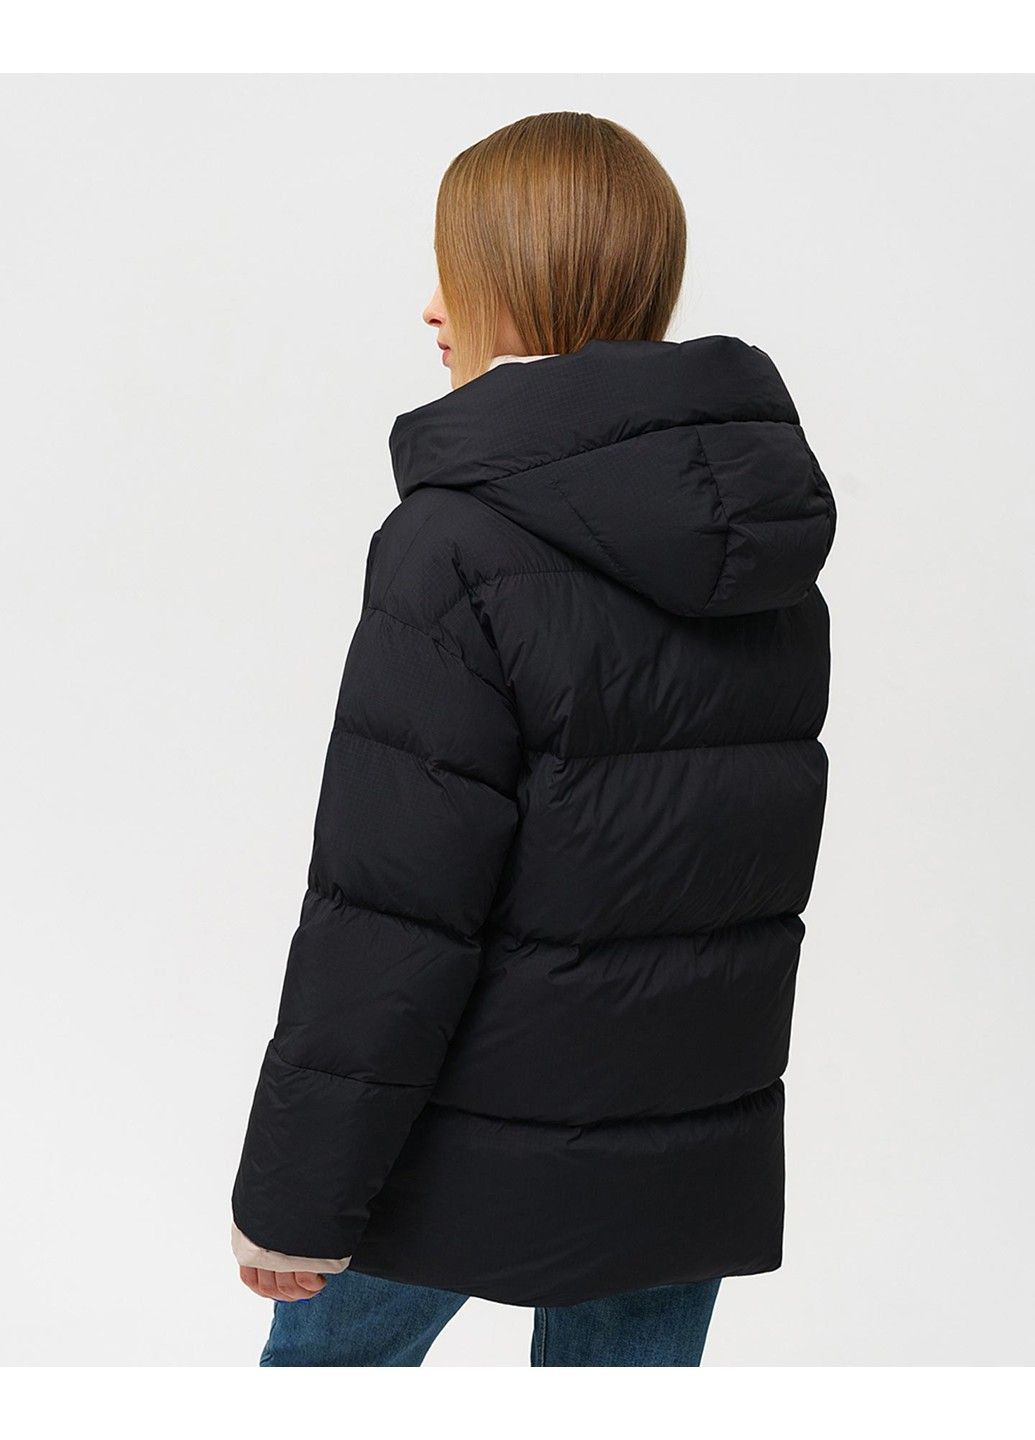 Чорна зимня куртка 21 - 04308 Vivilona